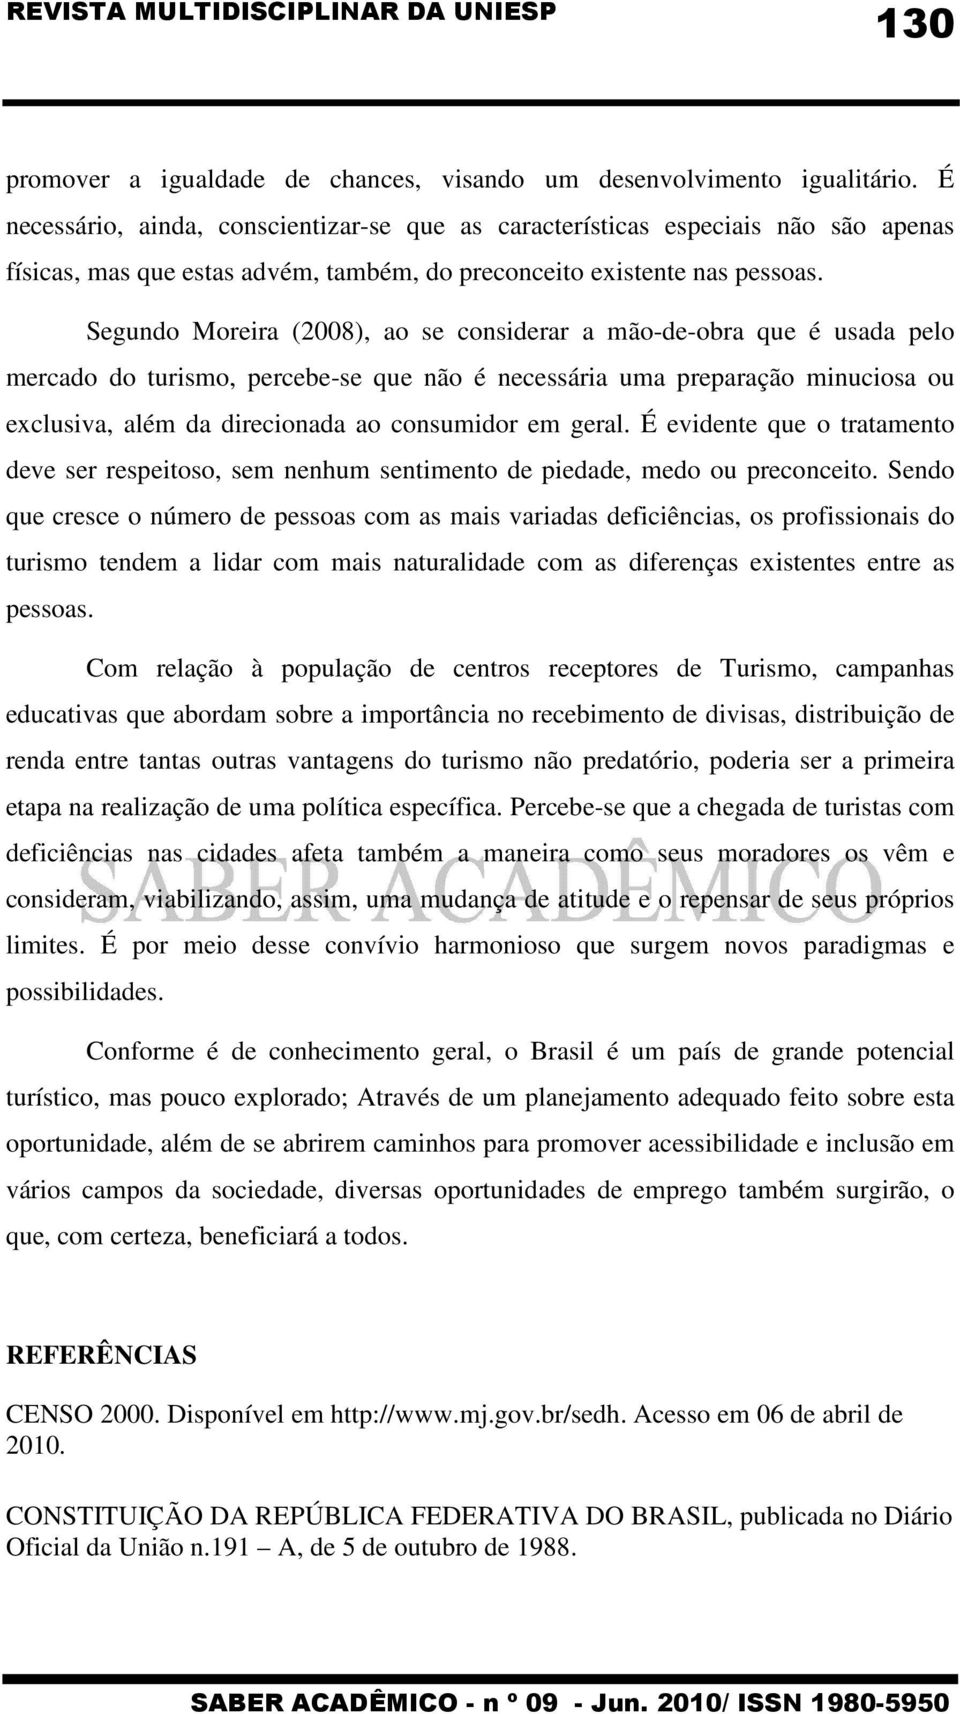 Segundo Moreira (2008), ao se considerar a mão-de-obra que é usada pelo mercado do turismo, percebe-se que não é necessária uma preparação minuciosa ou exclusiva, além da direcionada ao consumidor em